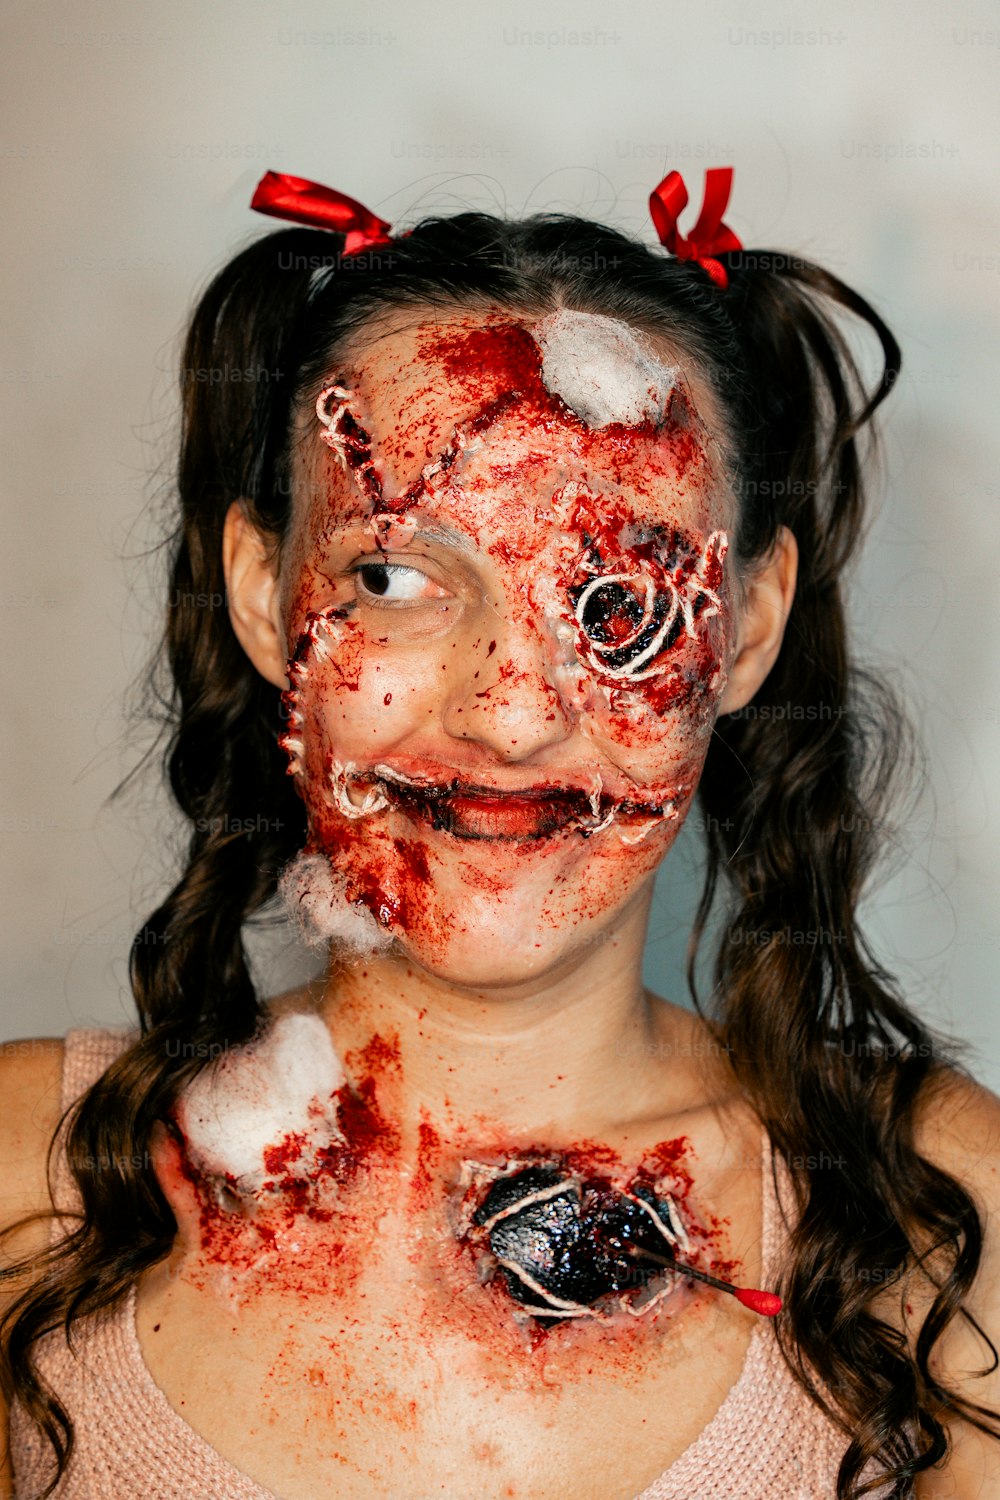 Une jeune fille maculée de sang sur tout le visage